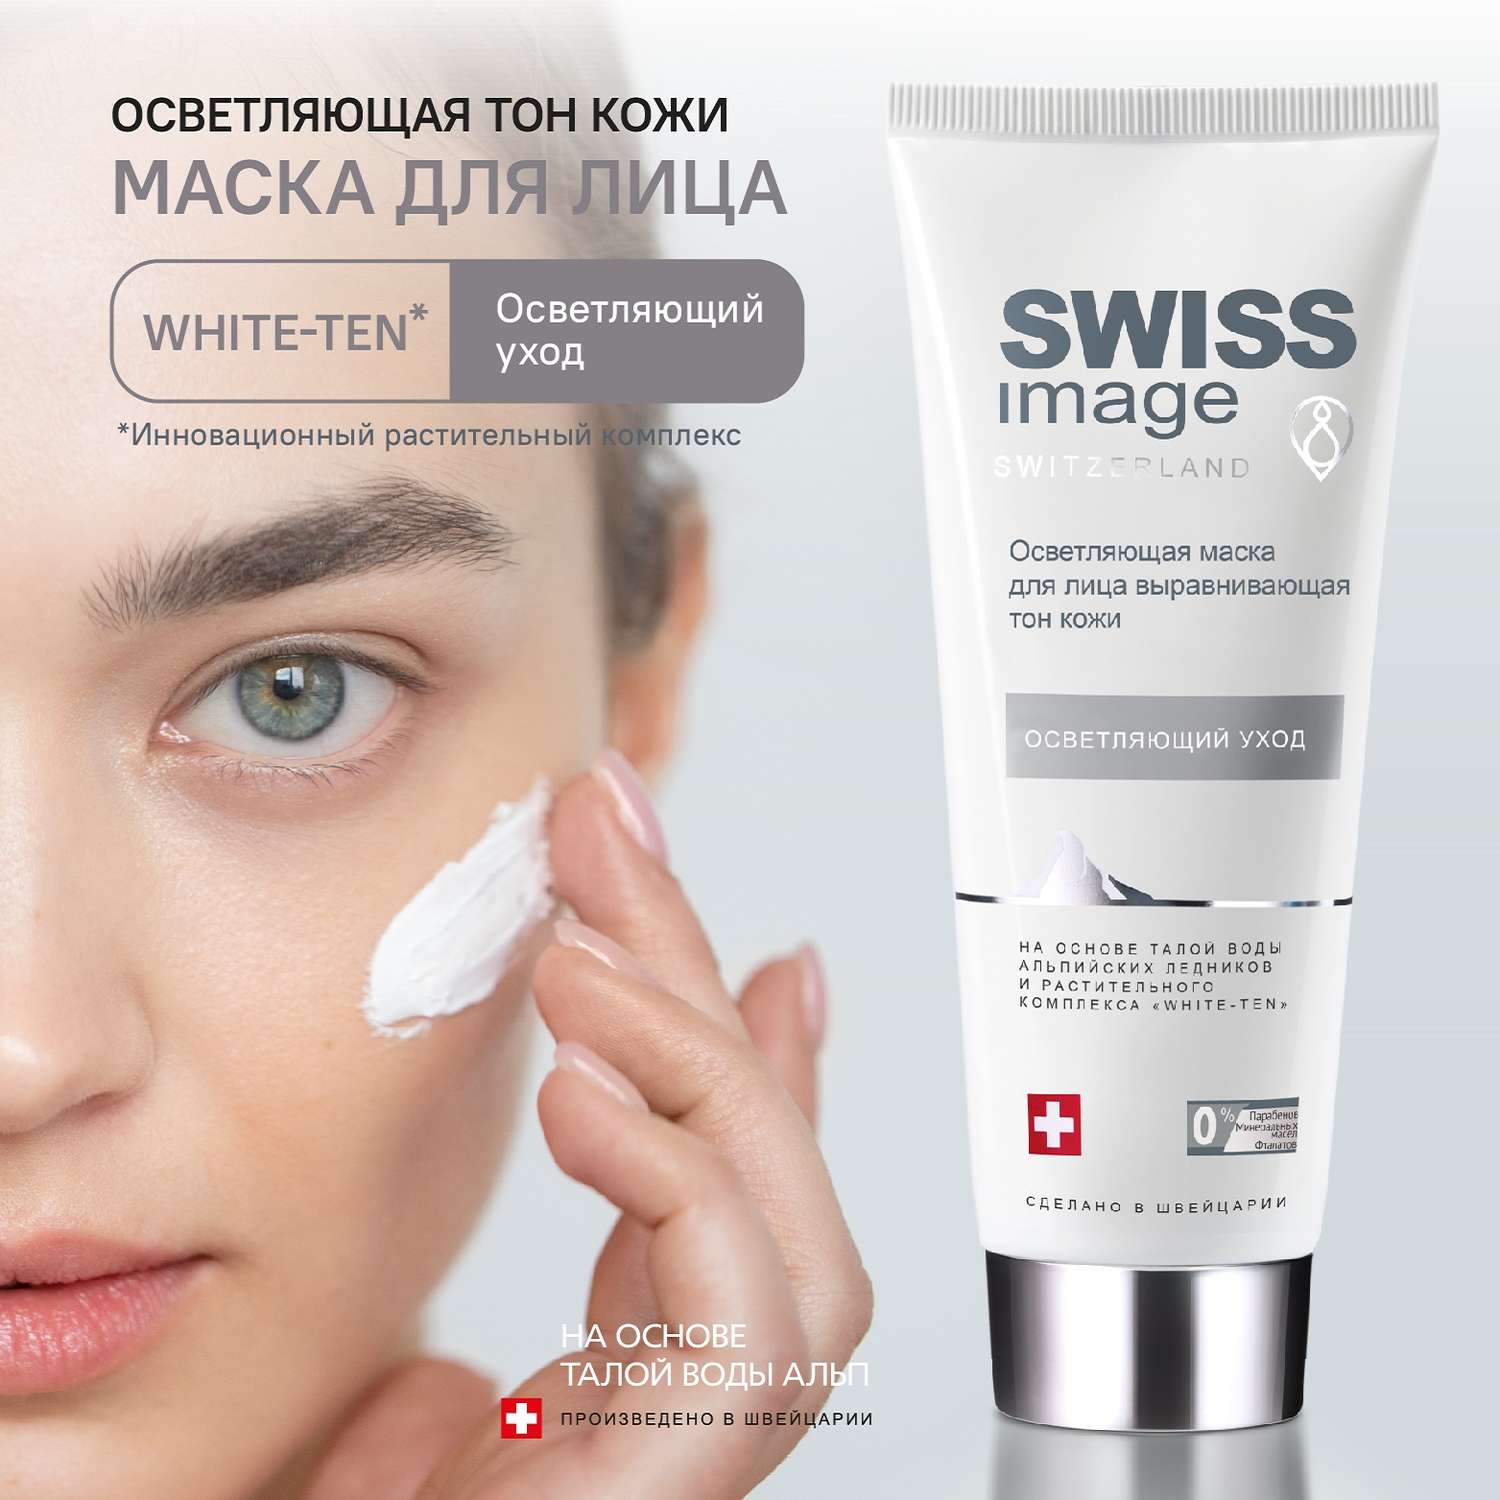 Осветляющая маска Swiss image для лица выравнивающая тон кожи 75 мл - фото 1